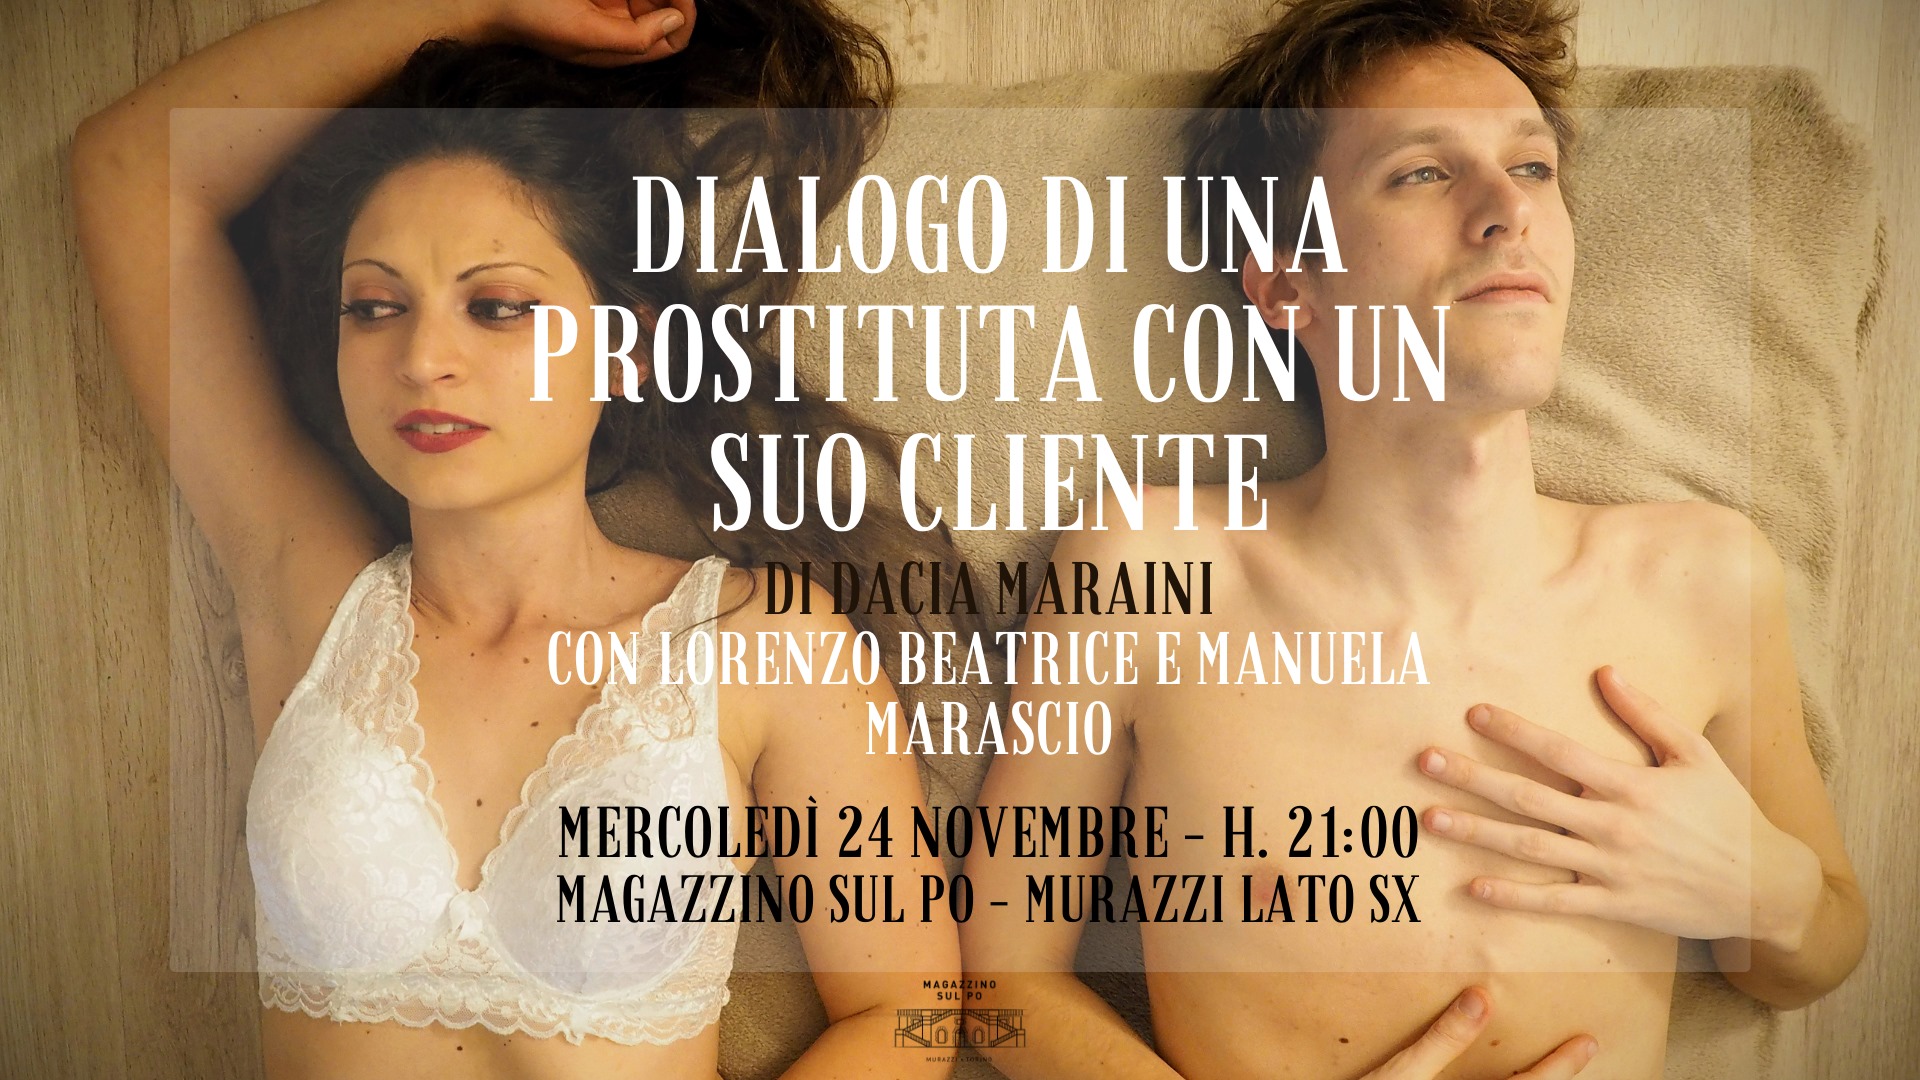 Dialogo di una prostituta con un suo cliente - Spettacolo teatrale @Magazzino sul Po